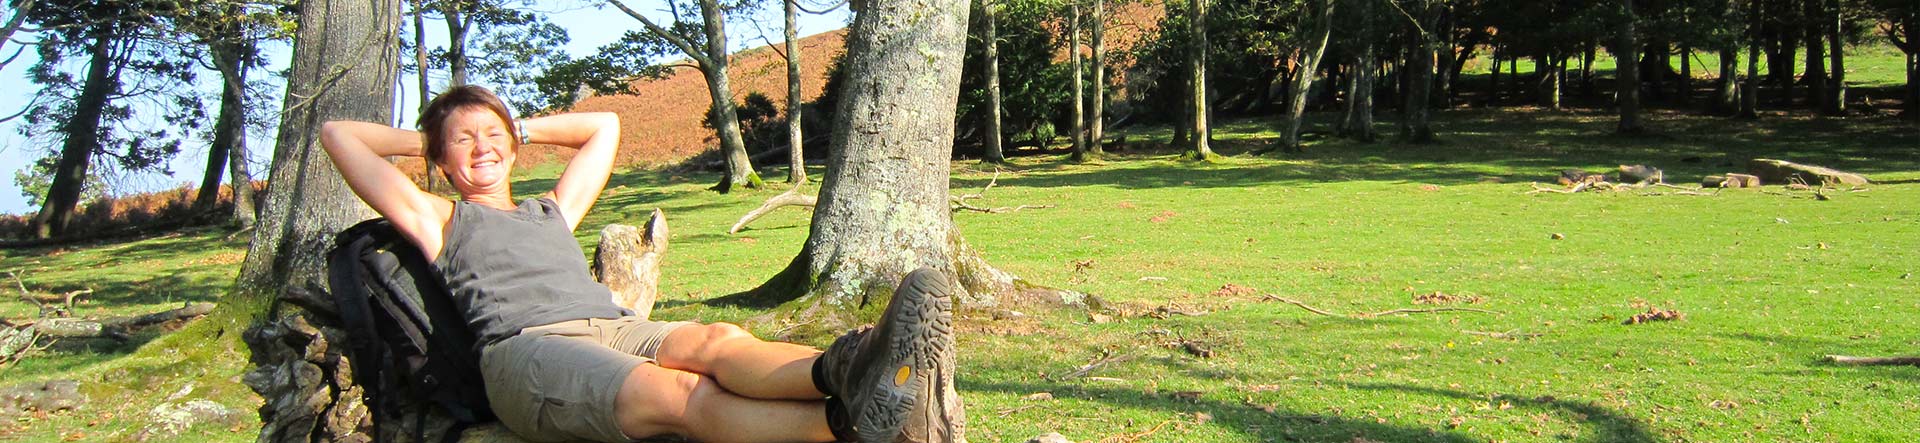 Femme relax allongée sur un tronc d'arbre pendant une randonnée avec Bivouac